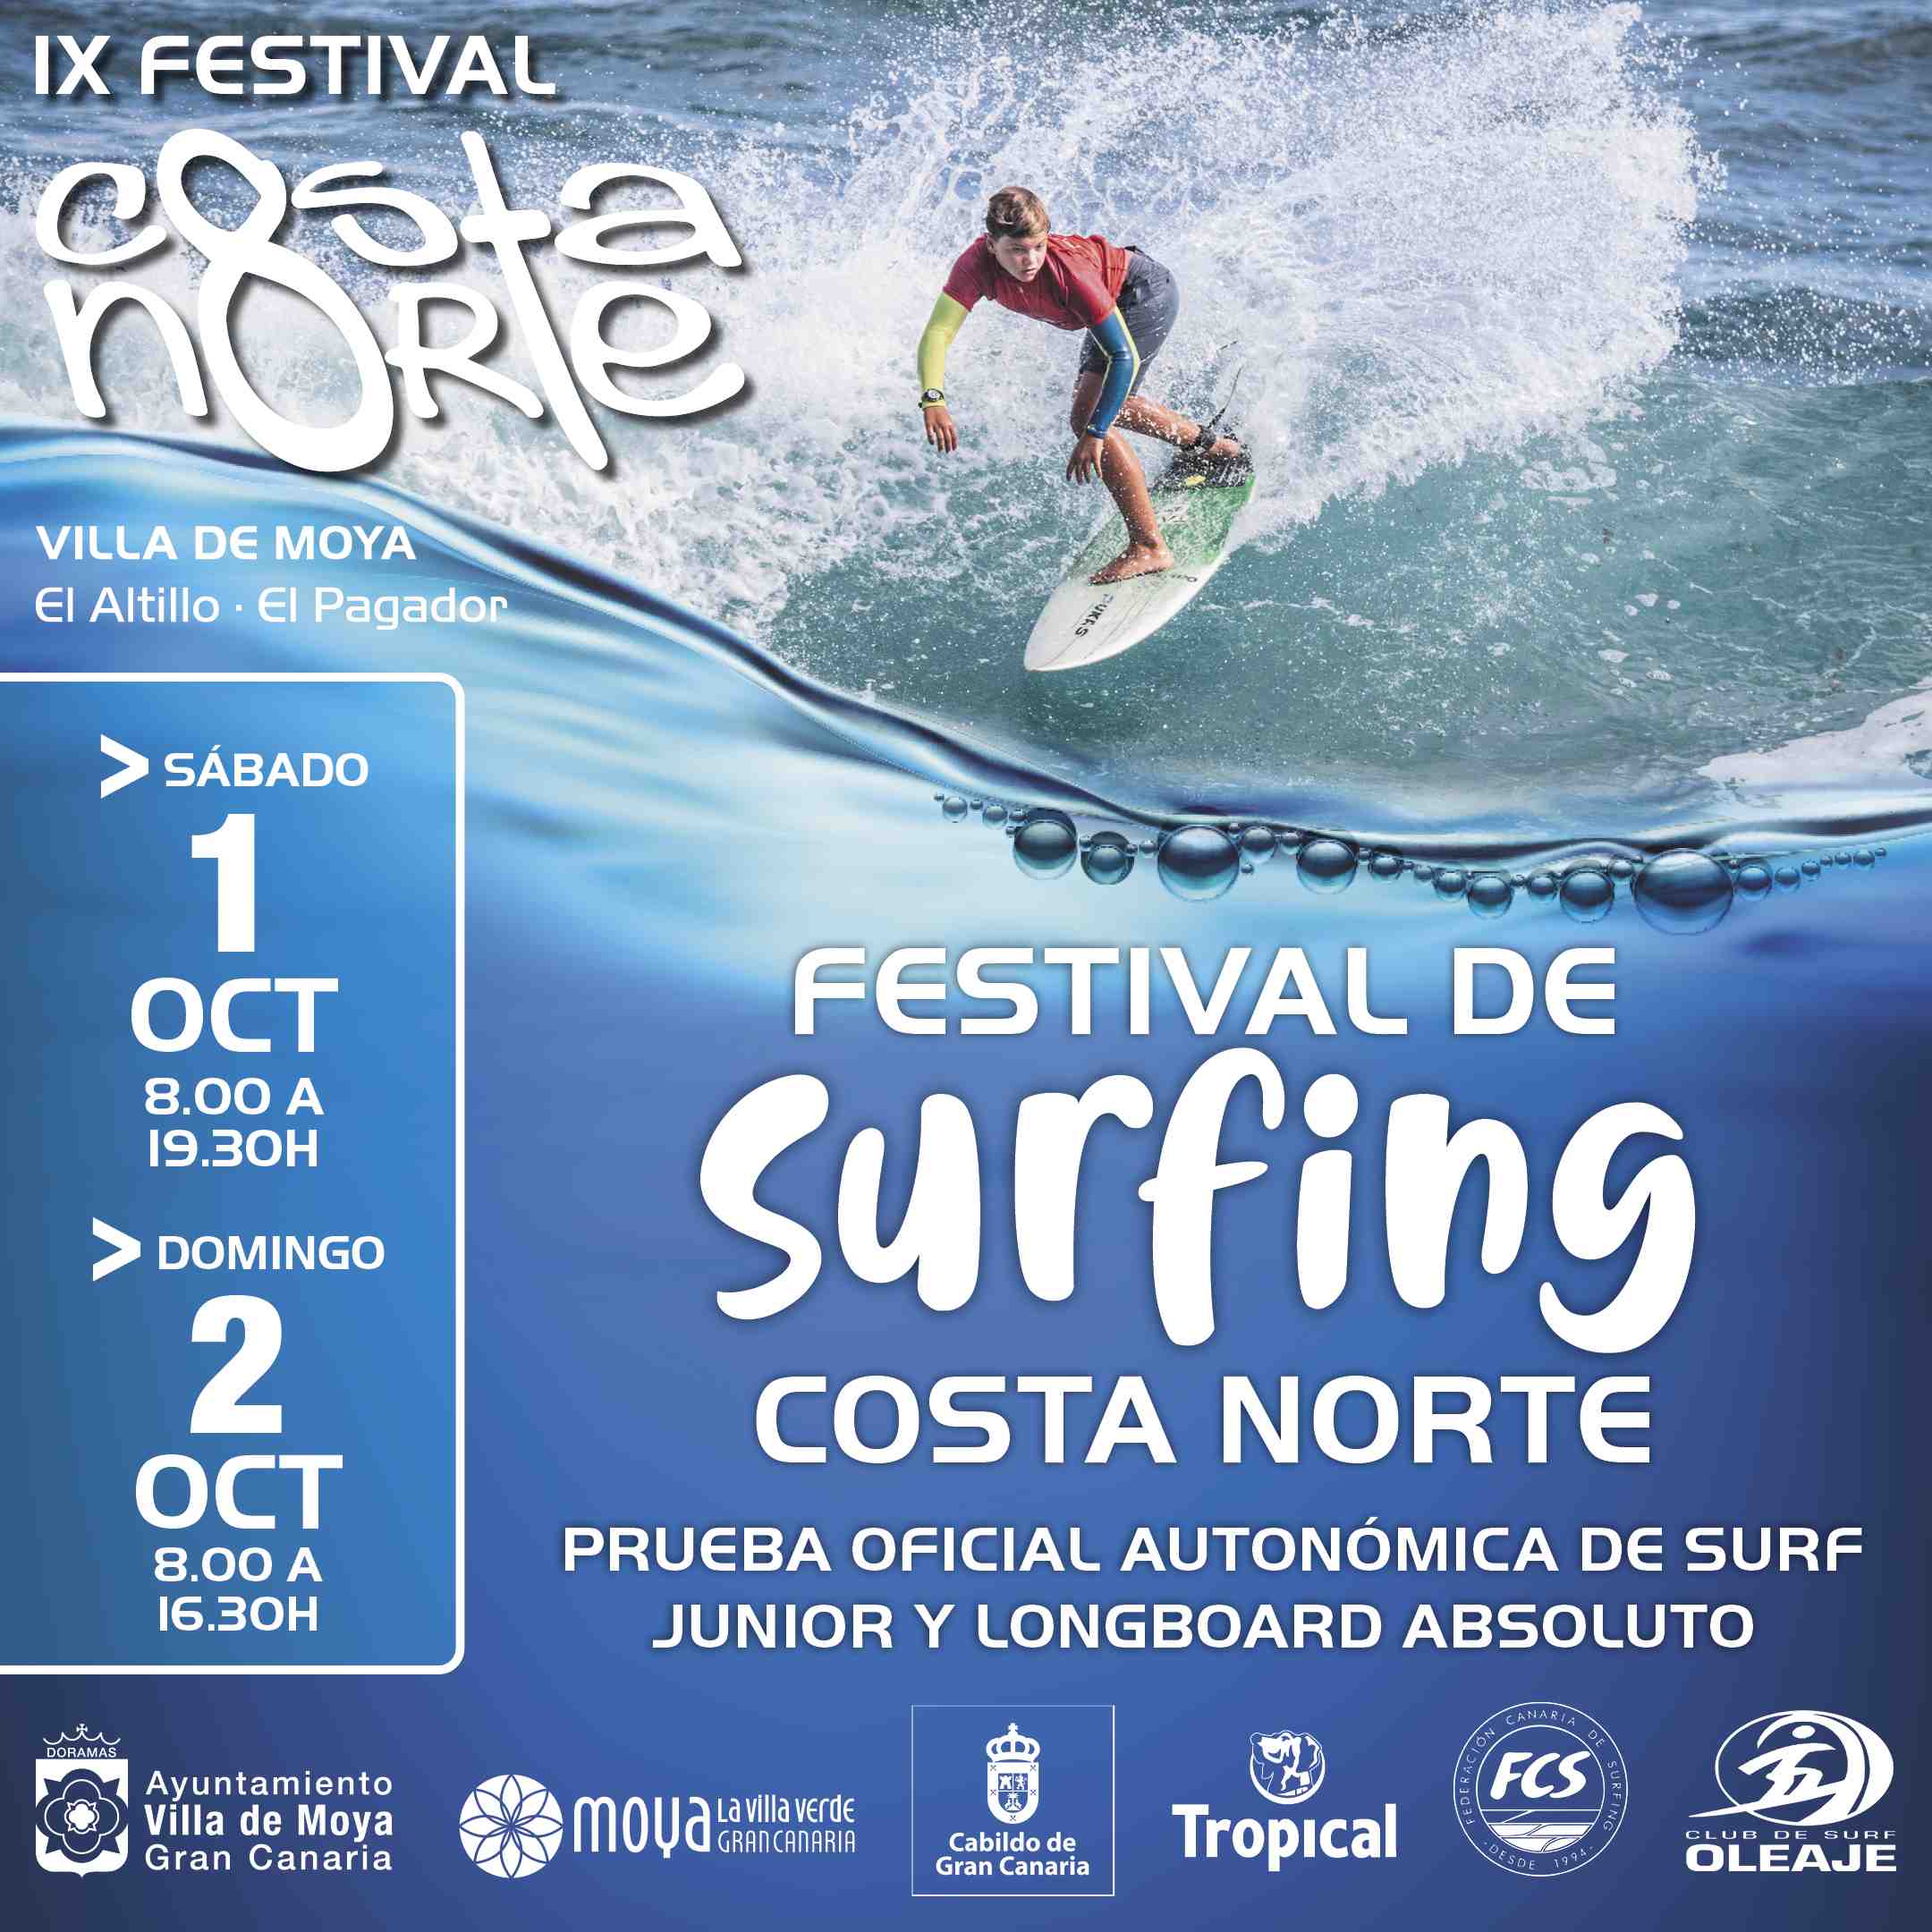 FESTIVAL DE SURFING COSTA NORTE 2022 - Iscriviti